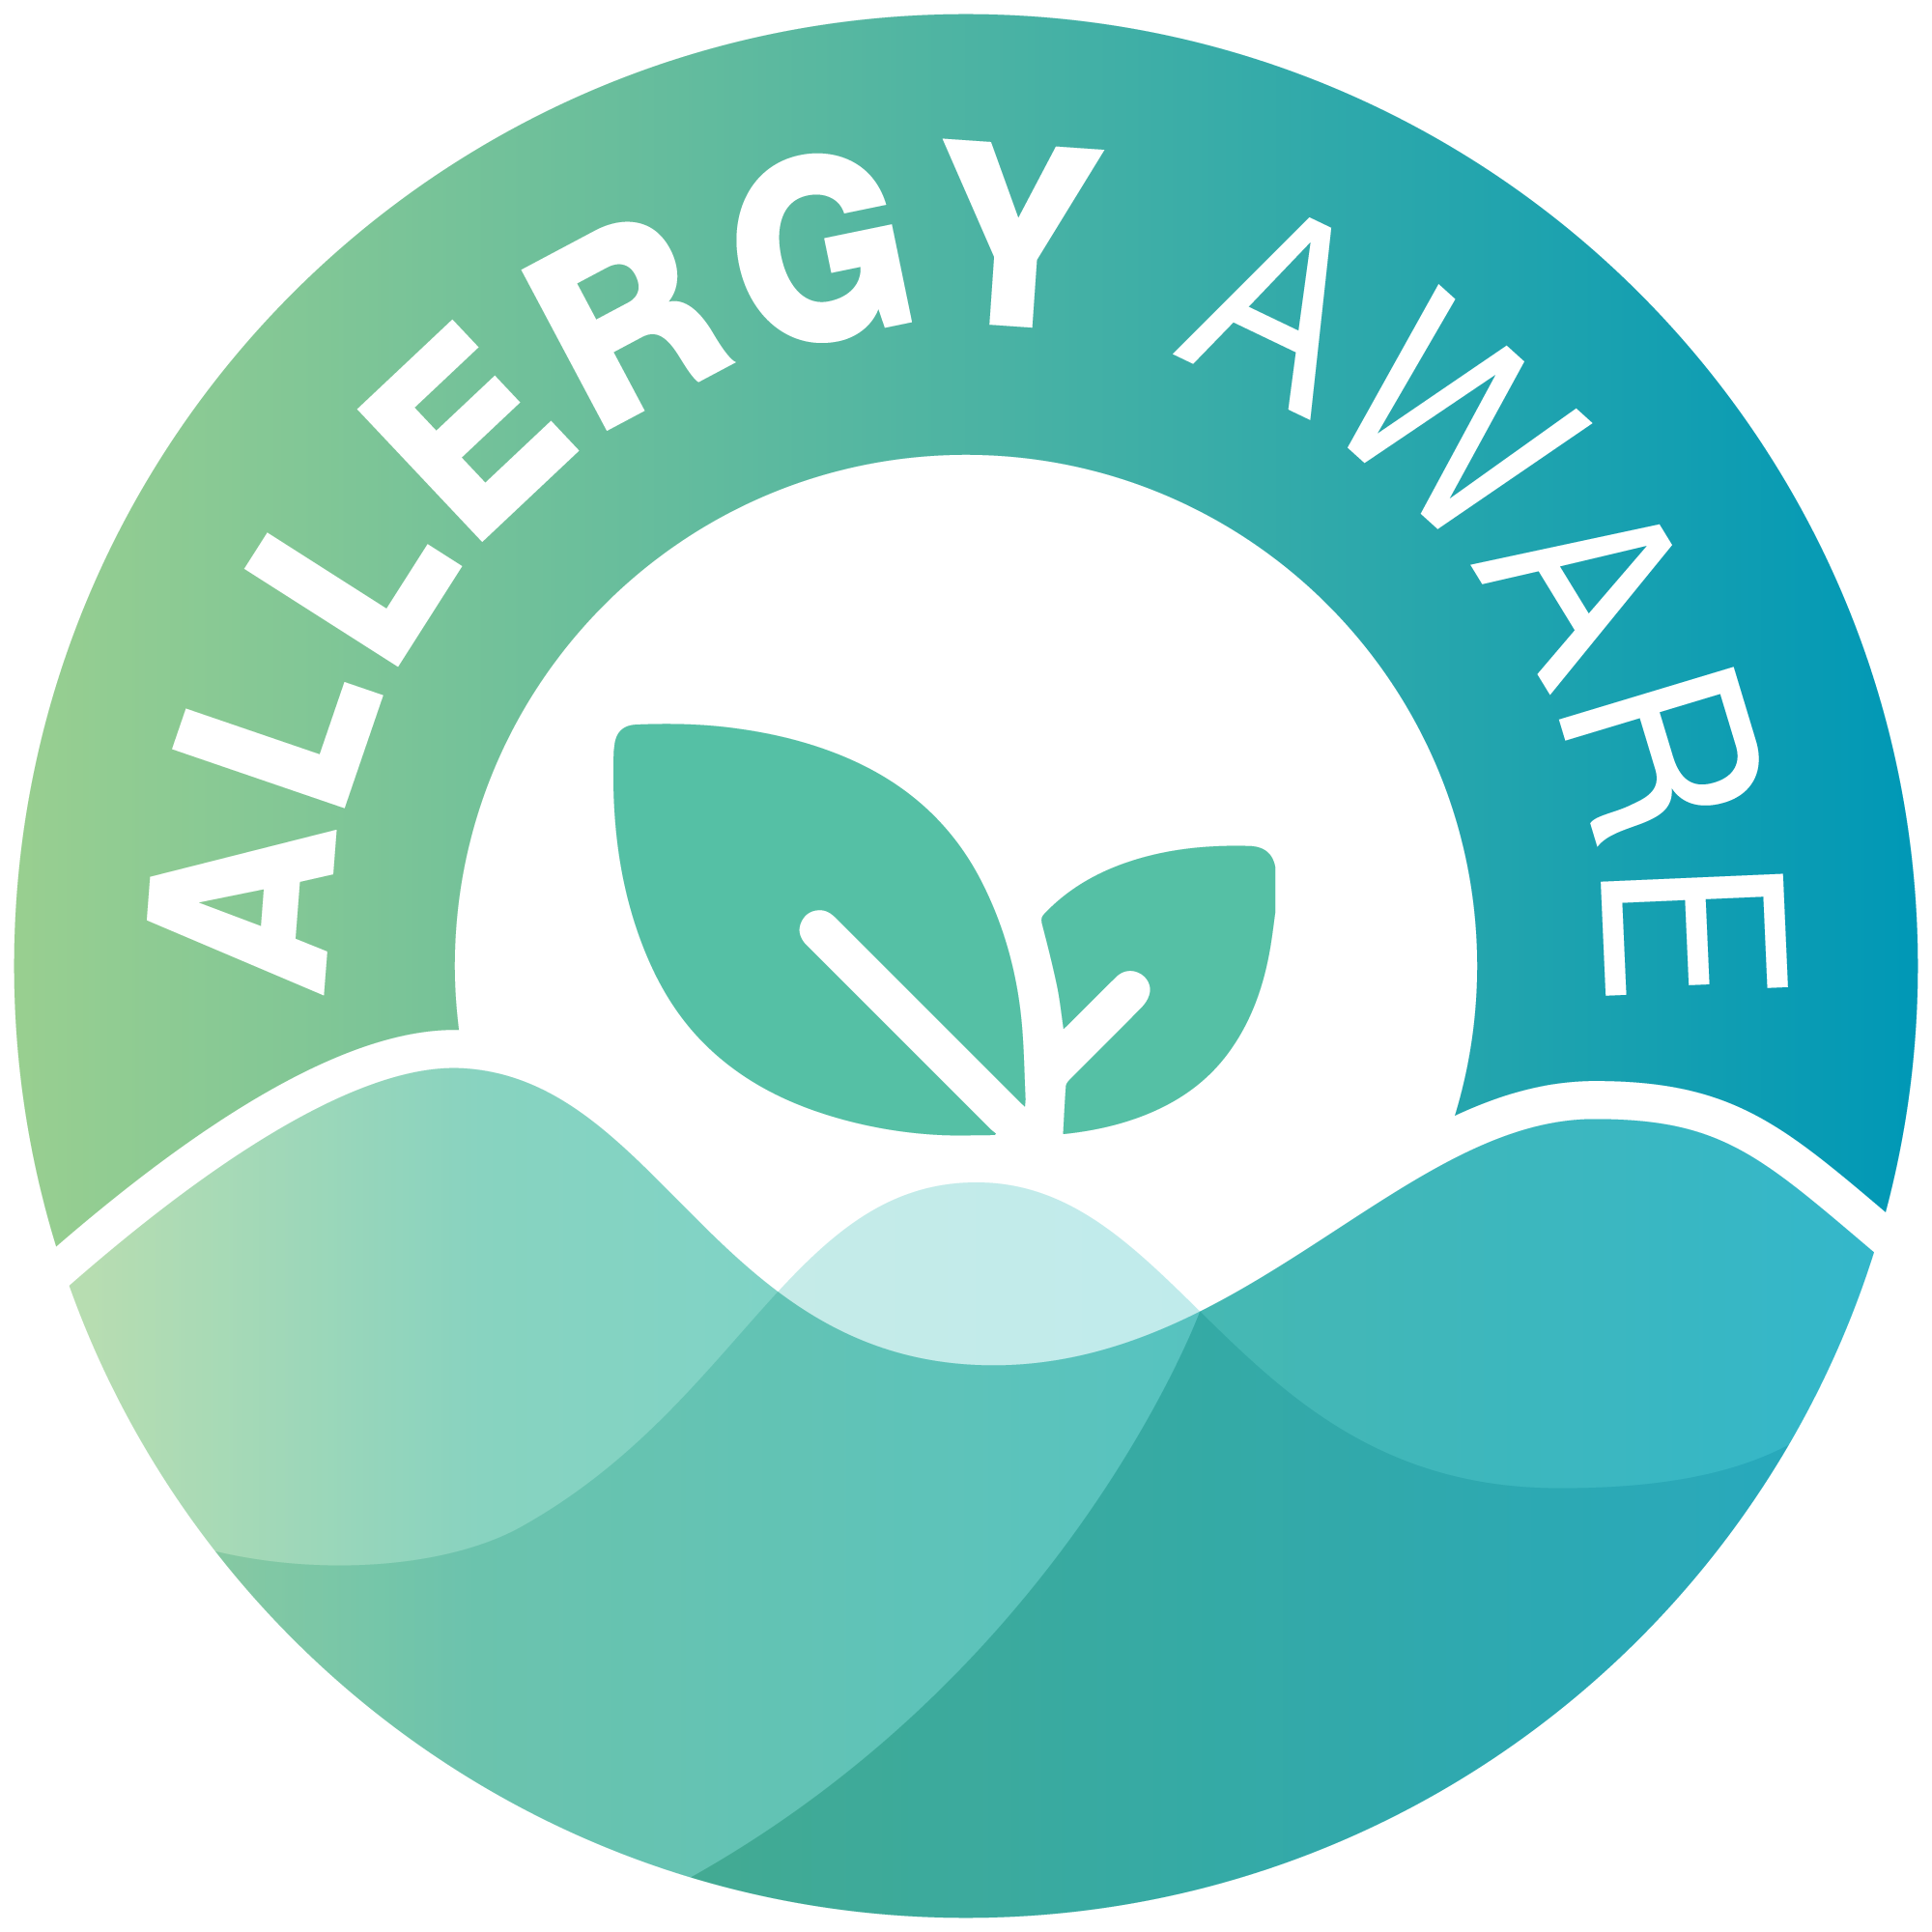 Allergy Aware